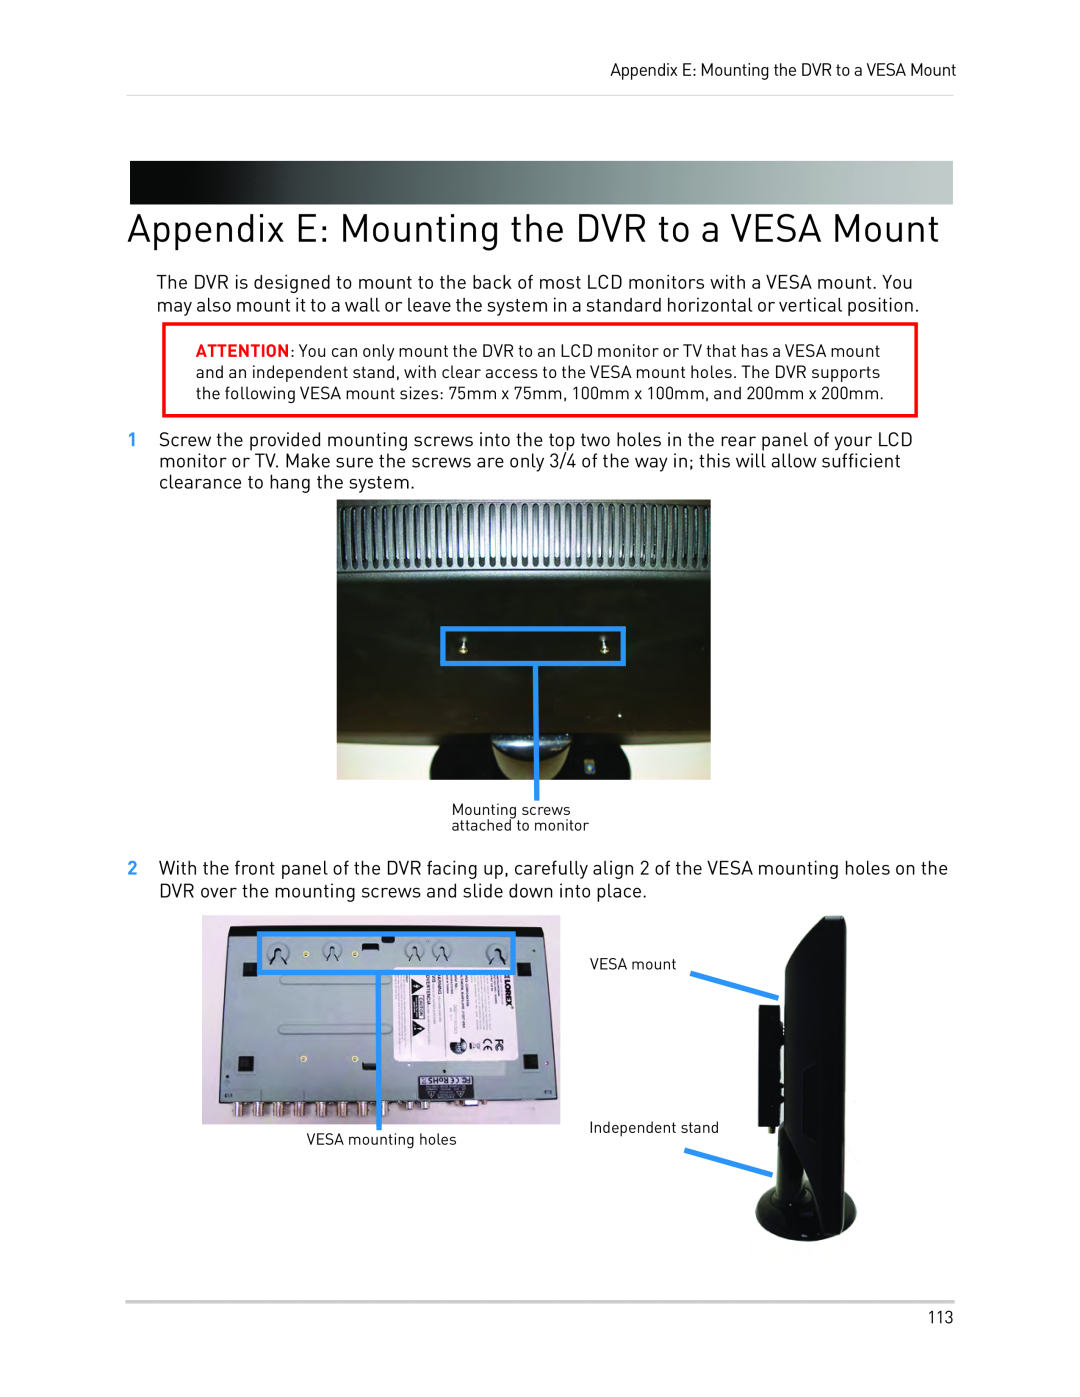 LOREX Technology LH330 EDGE2 Appendix E Mounting the DVR to a VESA Mount, Appendix E: Mounting the DVR to a VESA Mount 